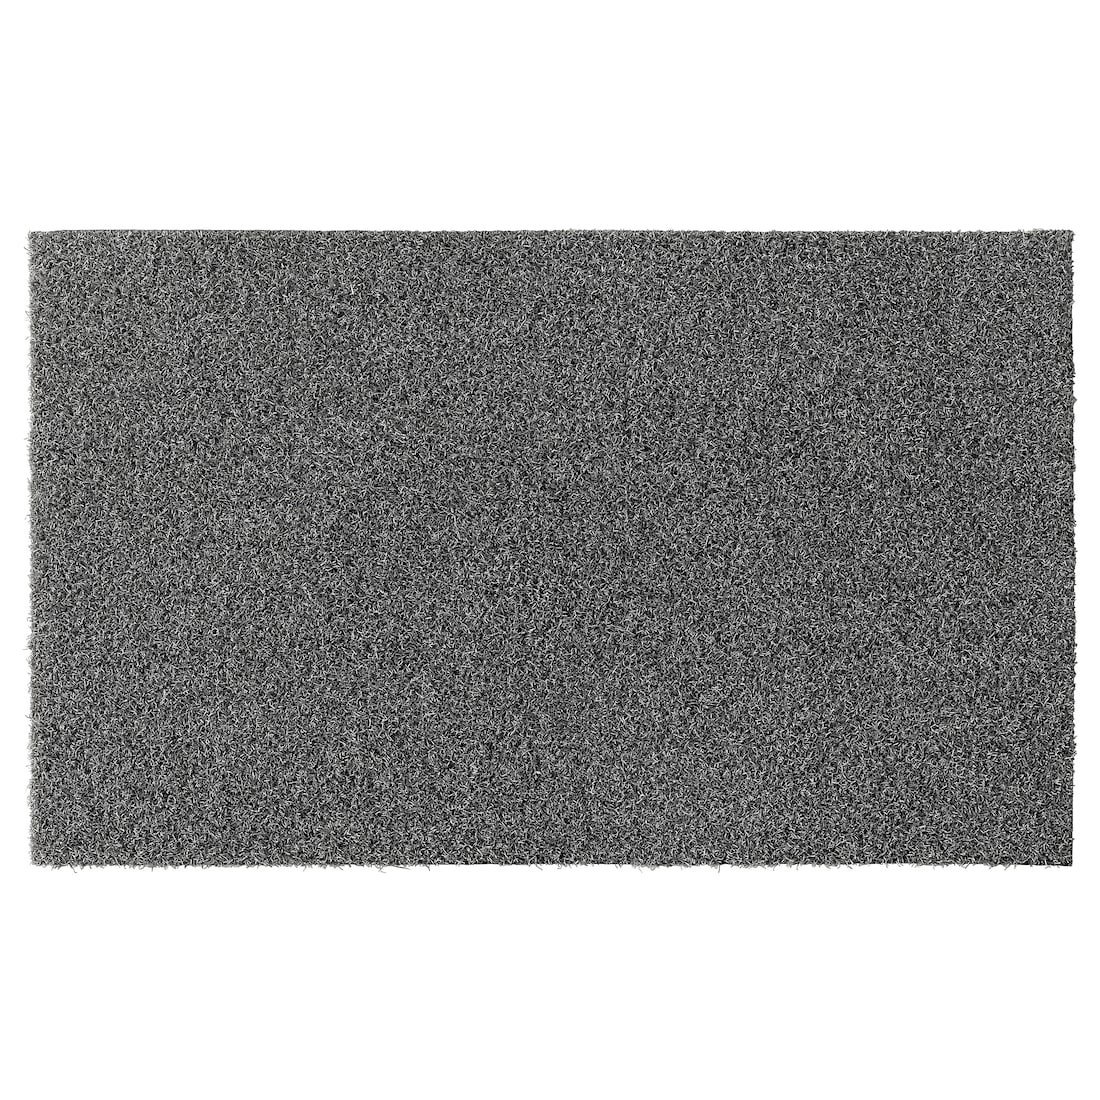 OPLEV ОПЛЕВ Придверний килимок, для дому / вулиці сірий, 50x80 см